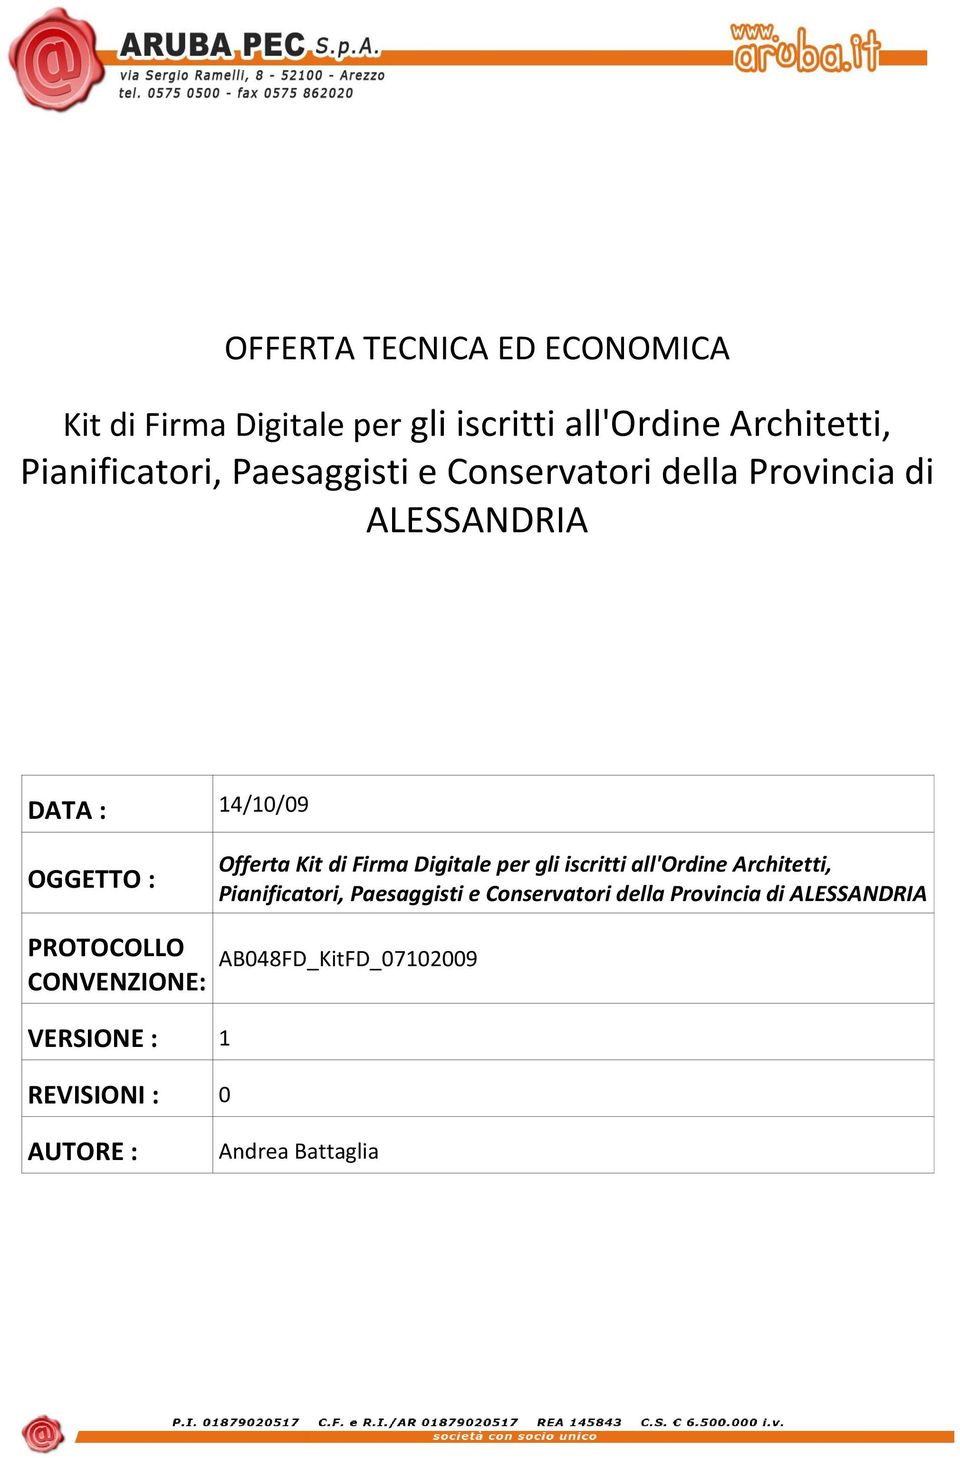 Digitale per gli iscritti all'ordine Architetti, Pianificatori, Paesaggisti e Conservatori della Provincia